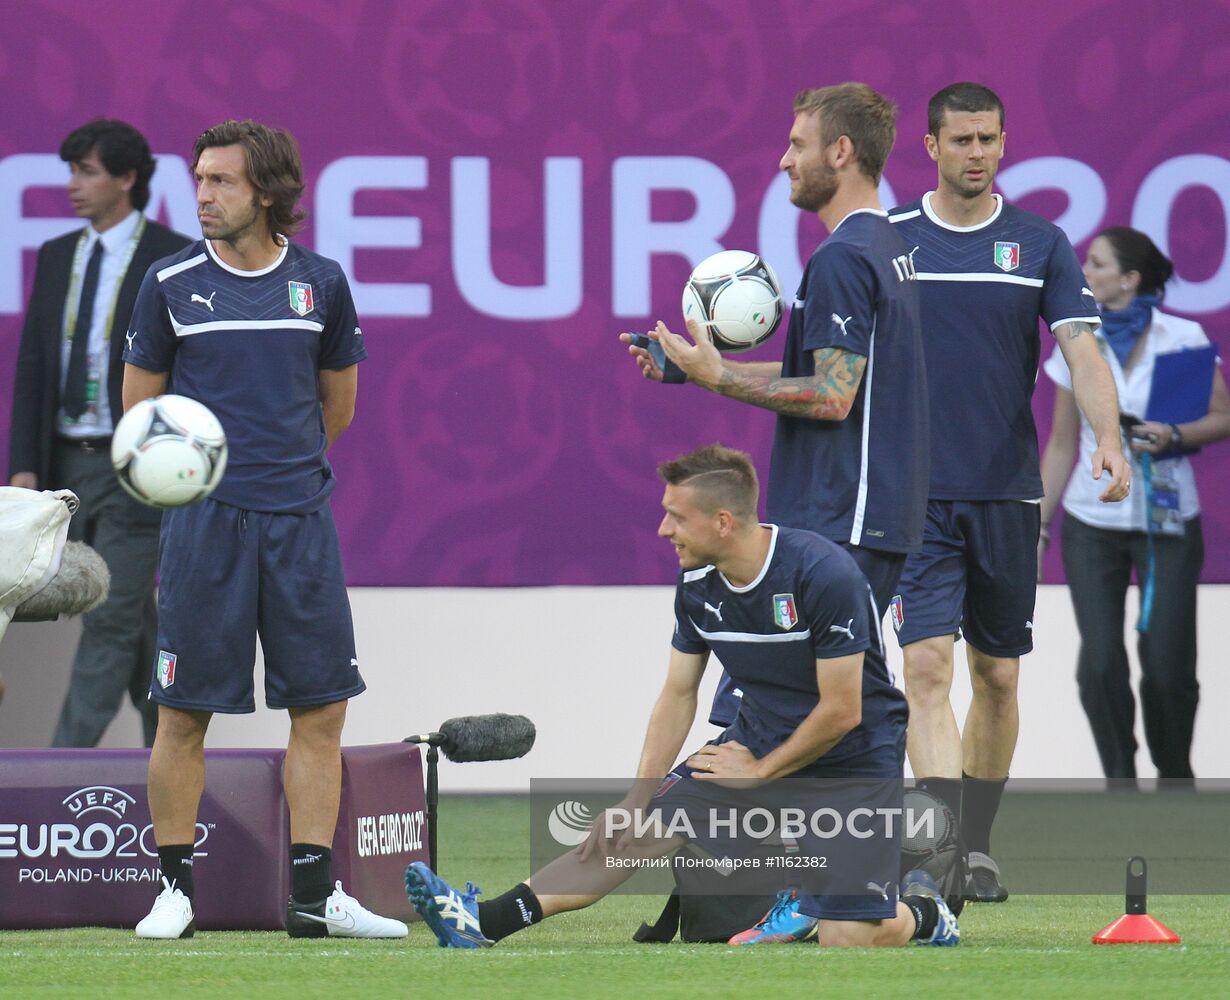 Футбол. ЕВРО - 2012. Тренировка сборной Италии